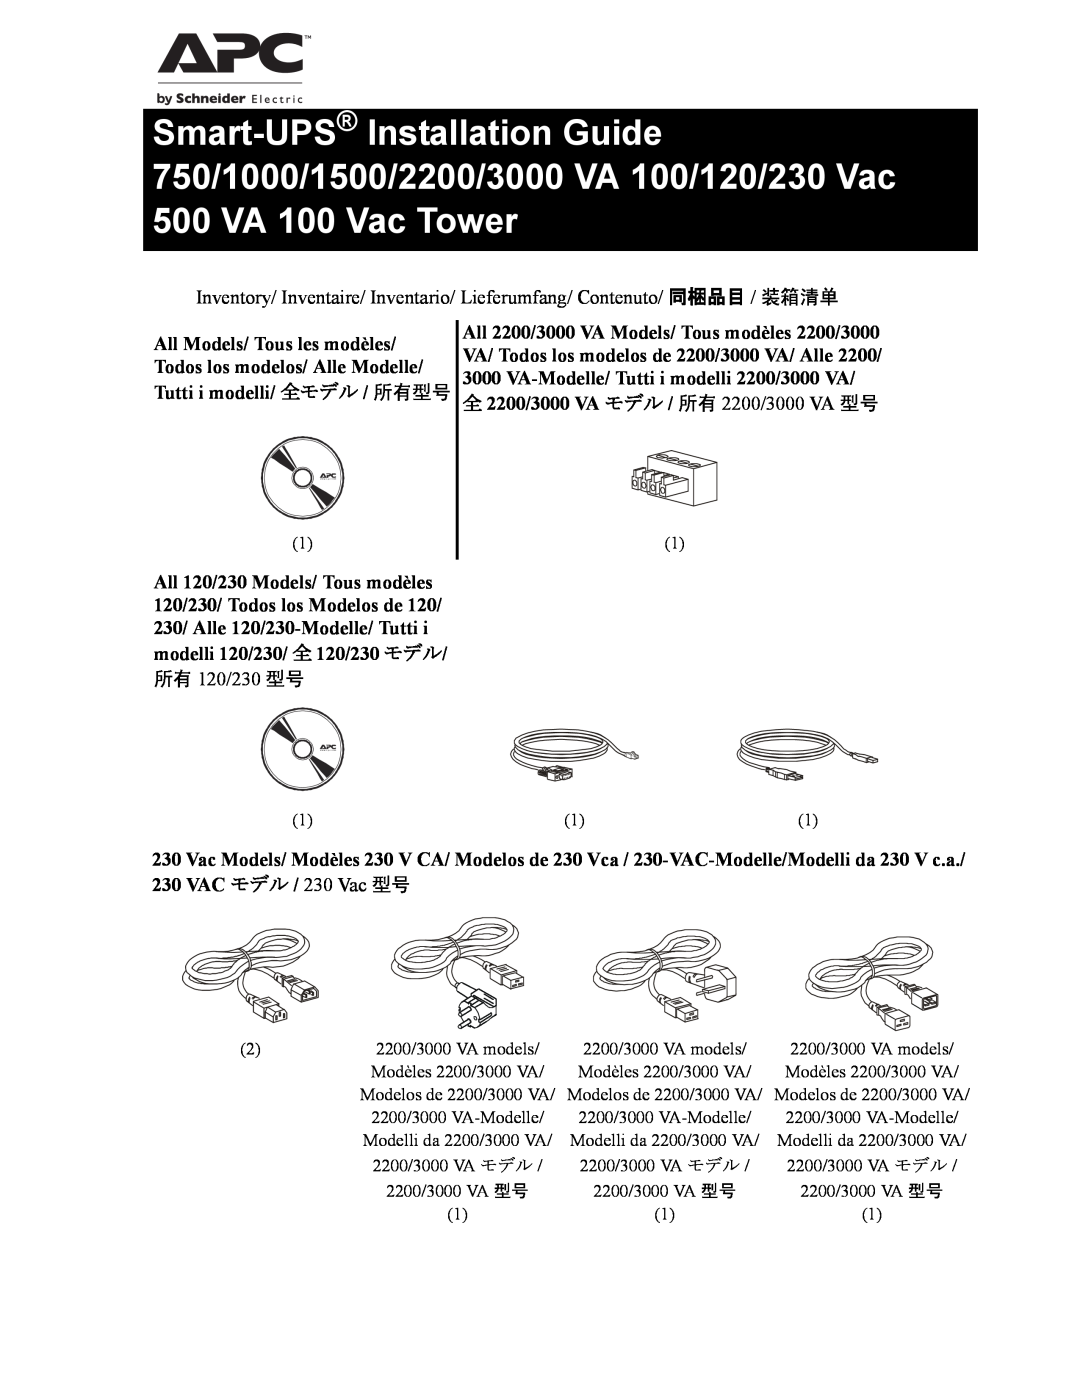 APC 750 VA, 1500 VA, 230 Vac, 120 Vac, 2200 VA, 1000 VA, 100 VAC manual 全 2200/3000 VA モデル / 所有 2200/3000 VA 型号, 所有 120/230 型号 